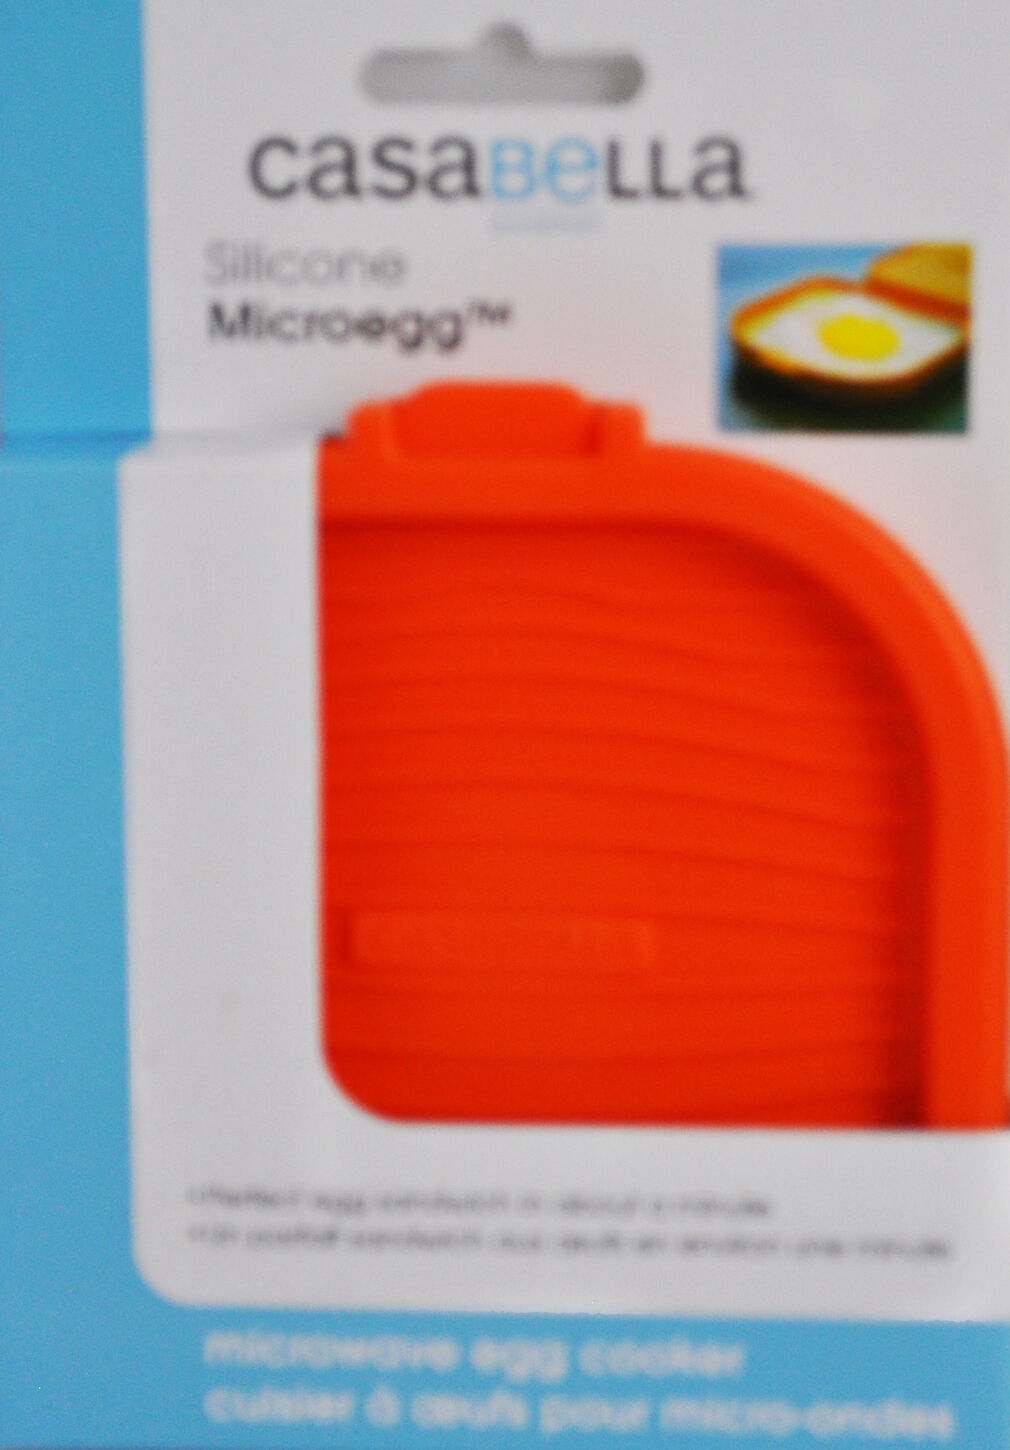 Primary image for Casabella Silicon Micro Egg Orange